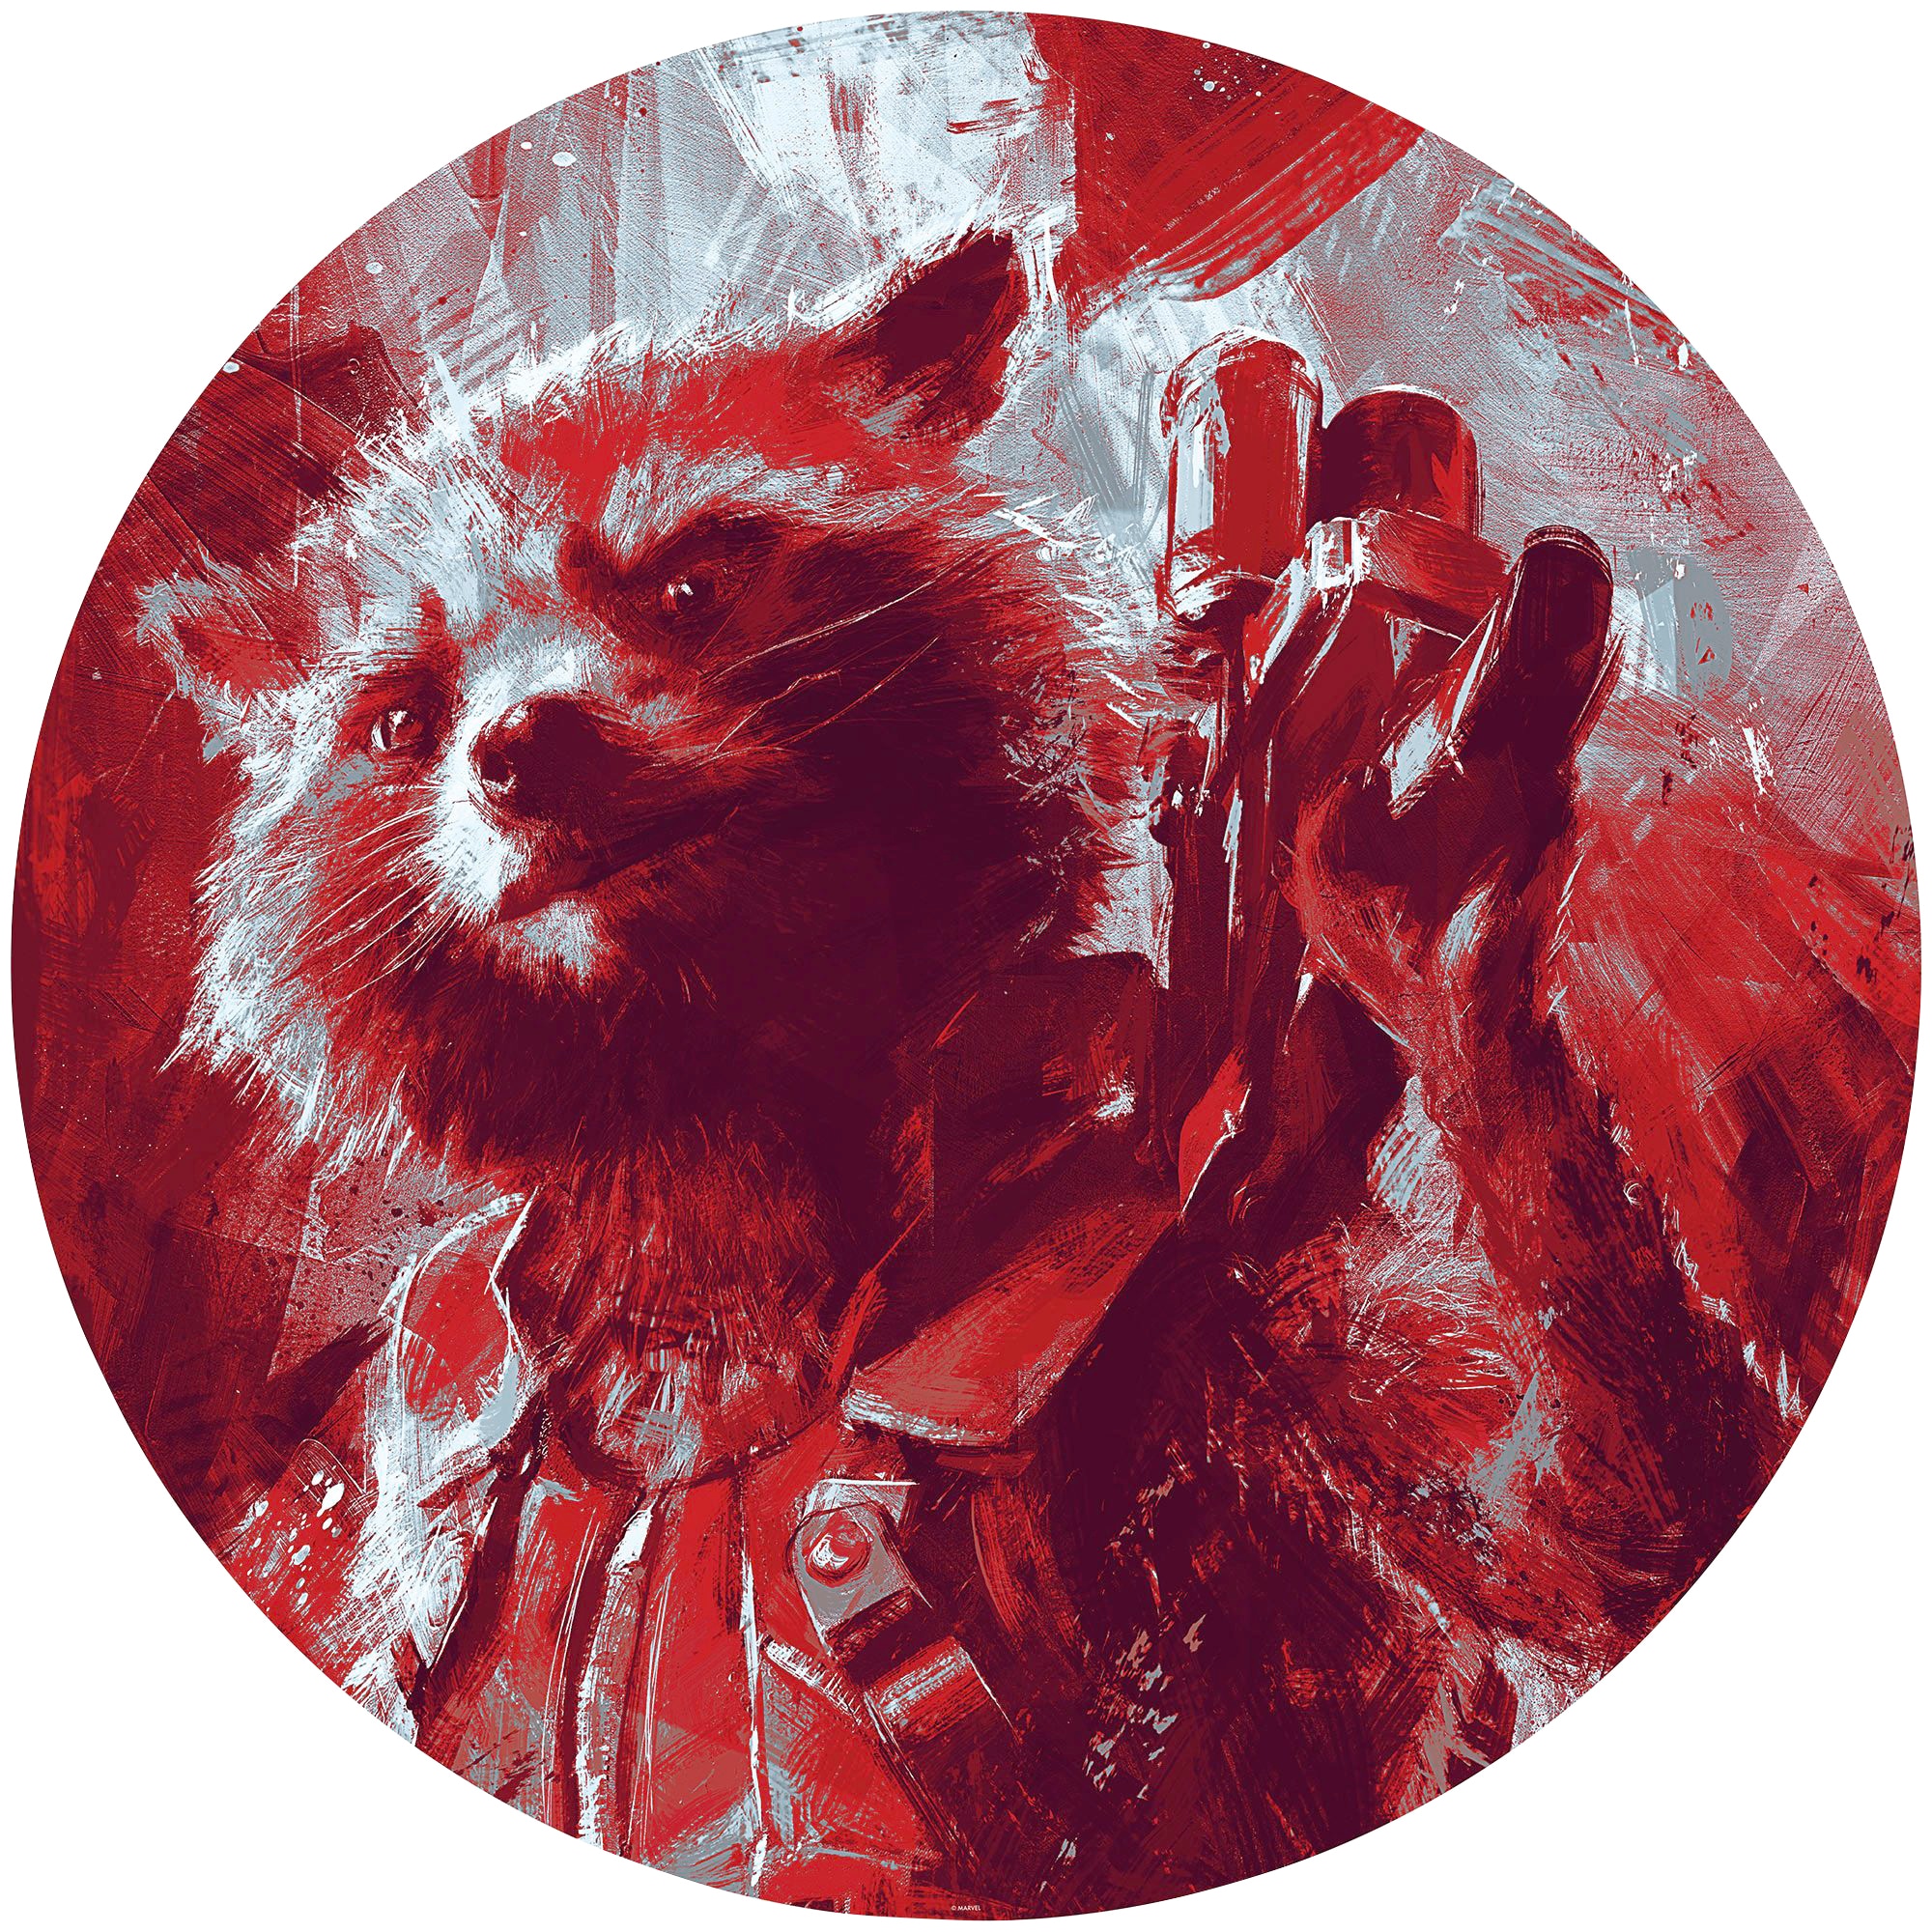 Fototapete »Avengers Painting Rocket Raccoon«, 125x125 cm (Breite x Höhe), rund und...